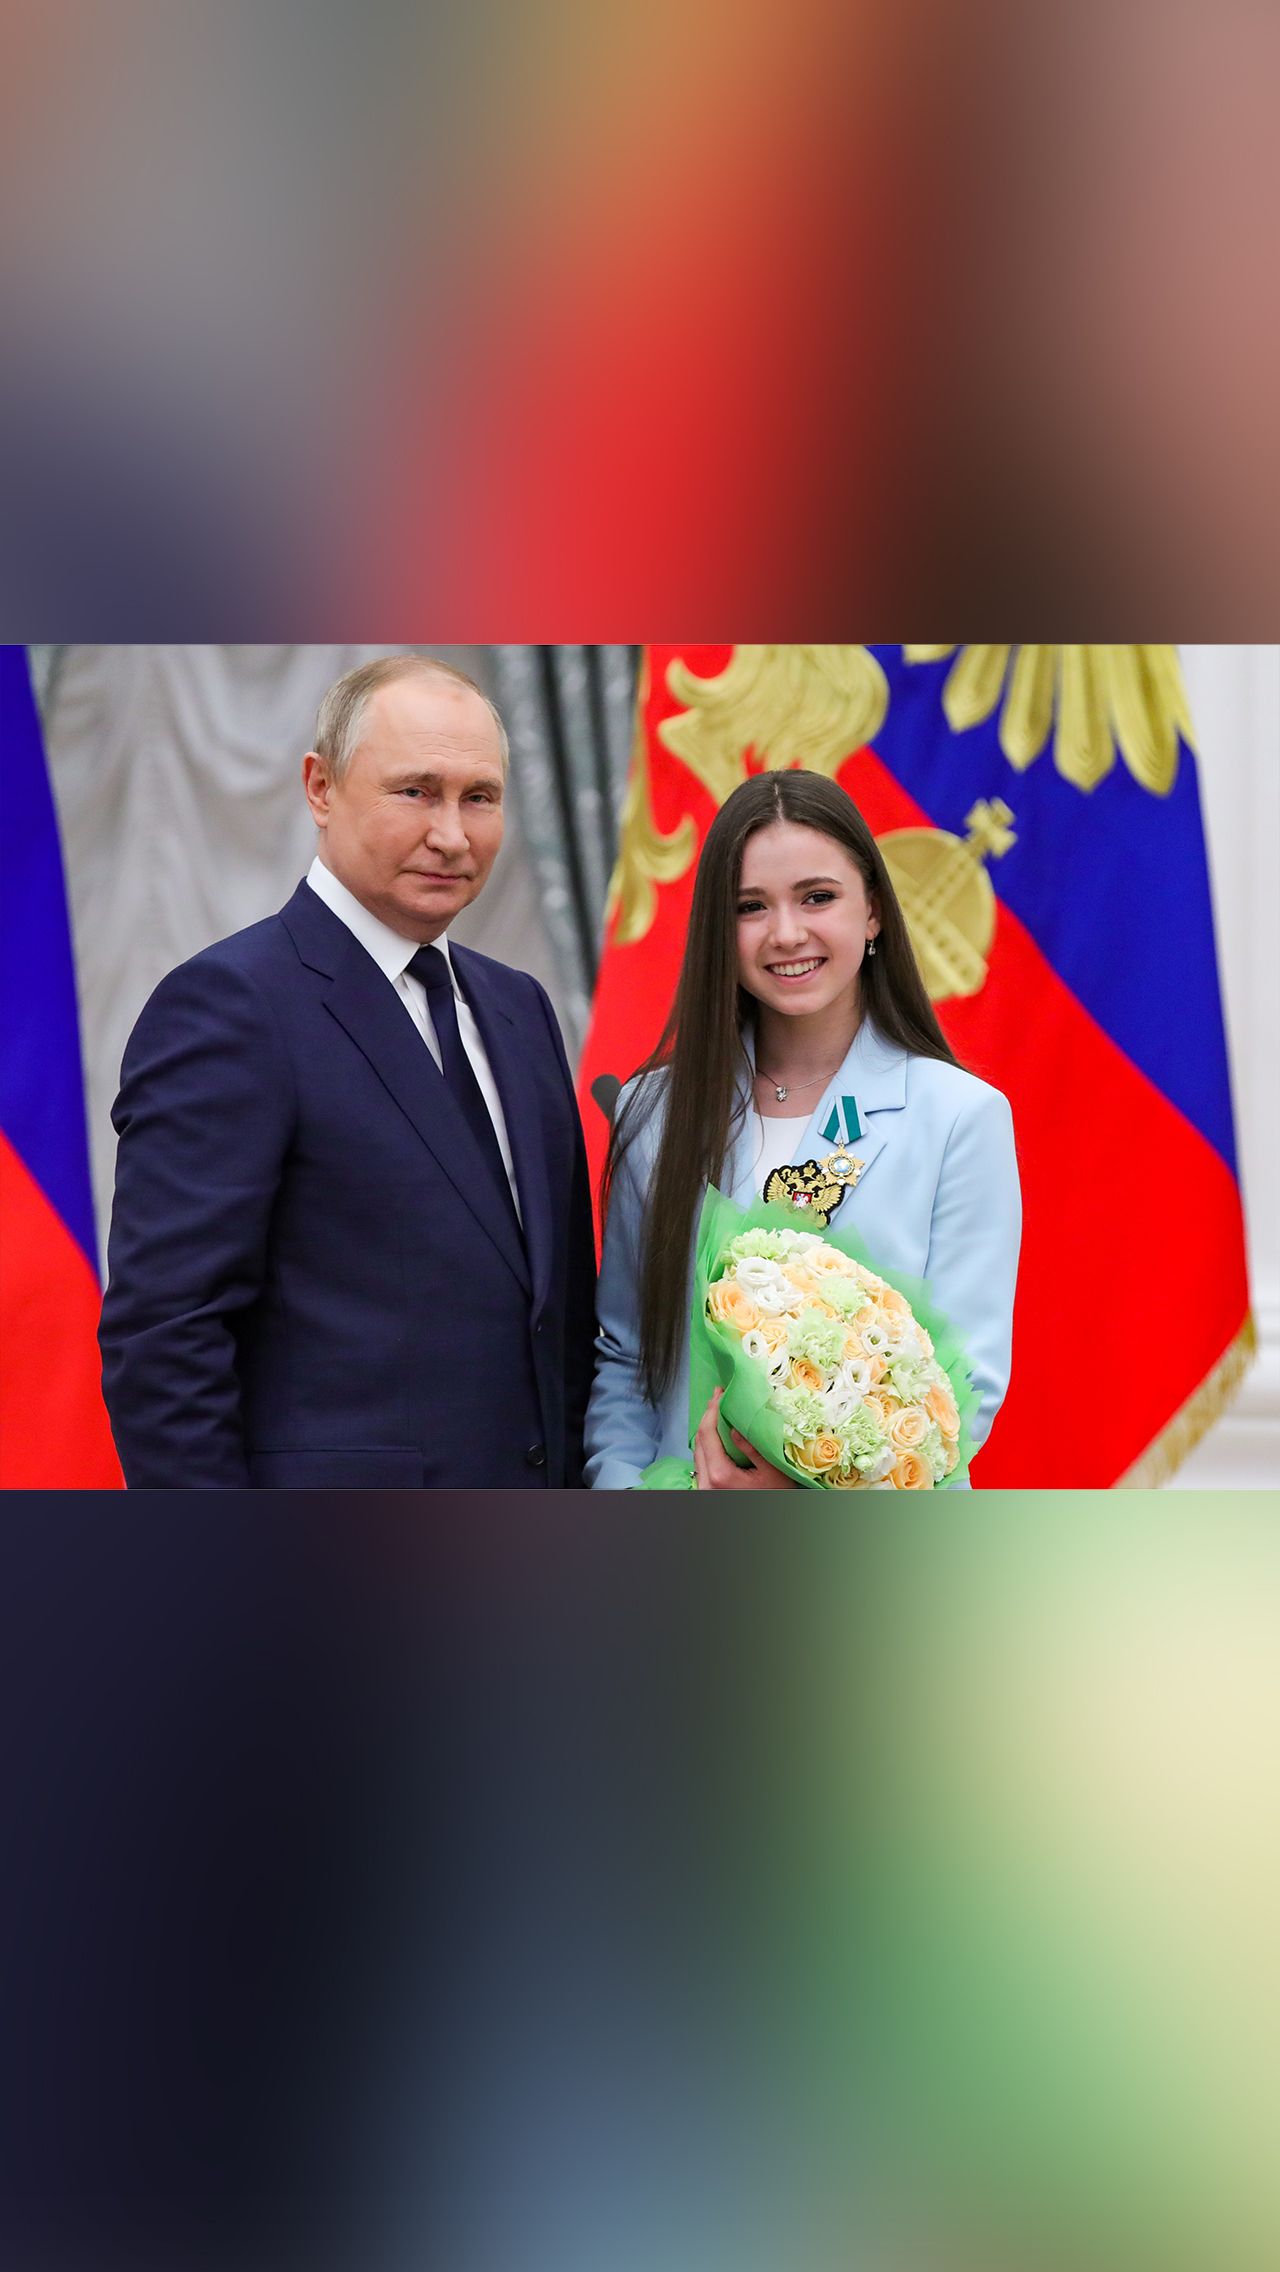 Несколько исключений на встрече сделали для 16-летней Камилы Валиевой, которая отмечает день рождения. Имениннице разрешили прийти с мамой, а также подготовили лимонад, а не шампанское.